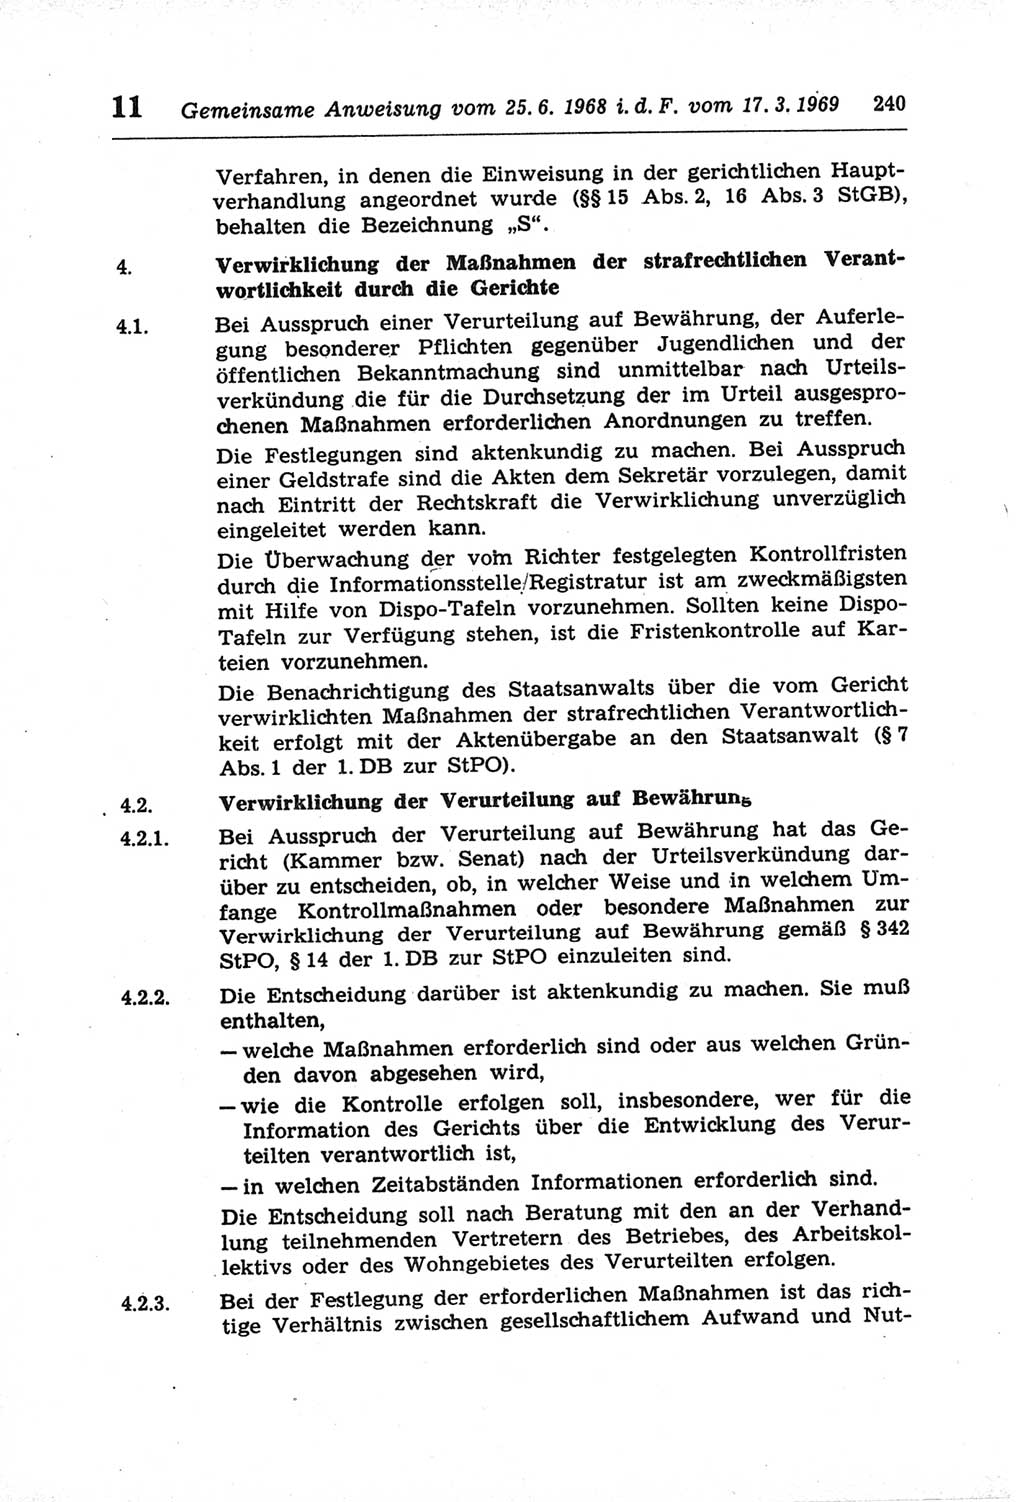 Strafprozeßordnung (StPO) der Deutschen Demokratischen Republik (DDR) und angrenzende Gesetze und Bestimmungen 1968, Seite 240 (StPO Ges. Bstgn. DDR 1968, S. 240)